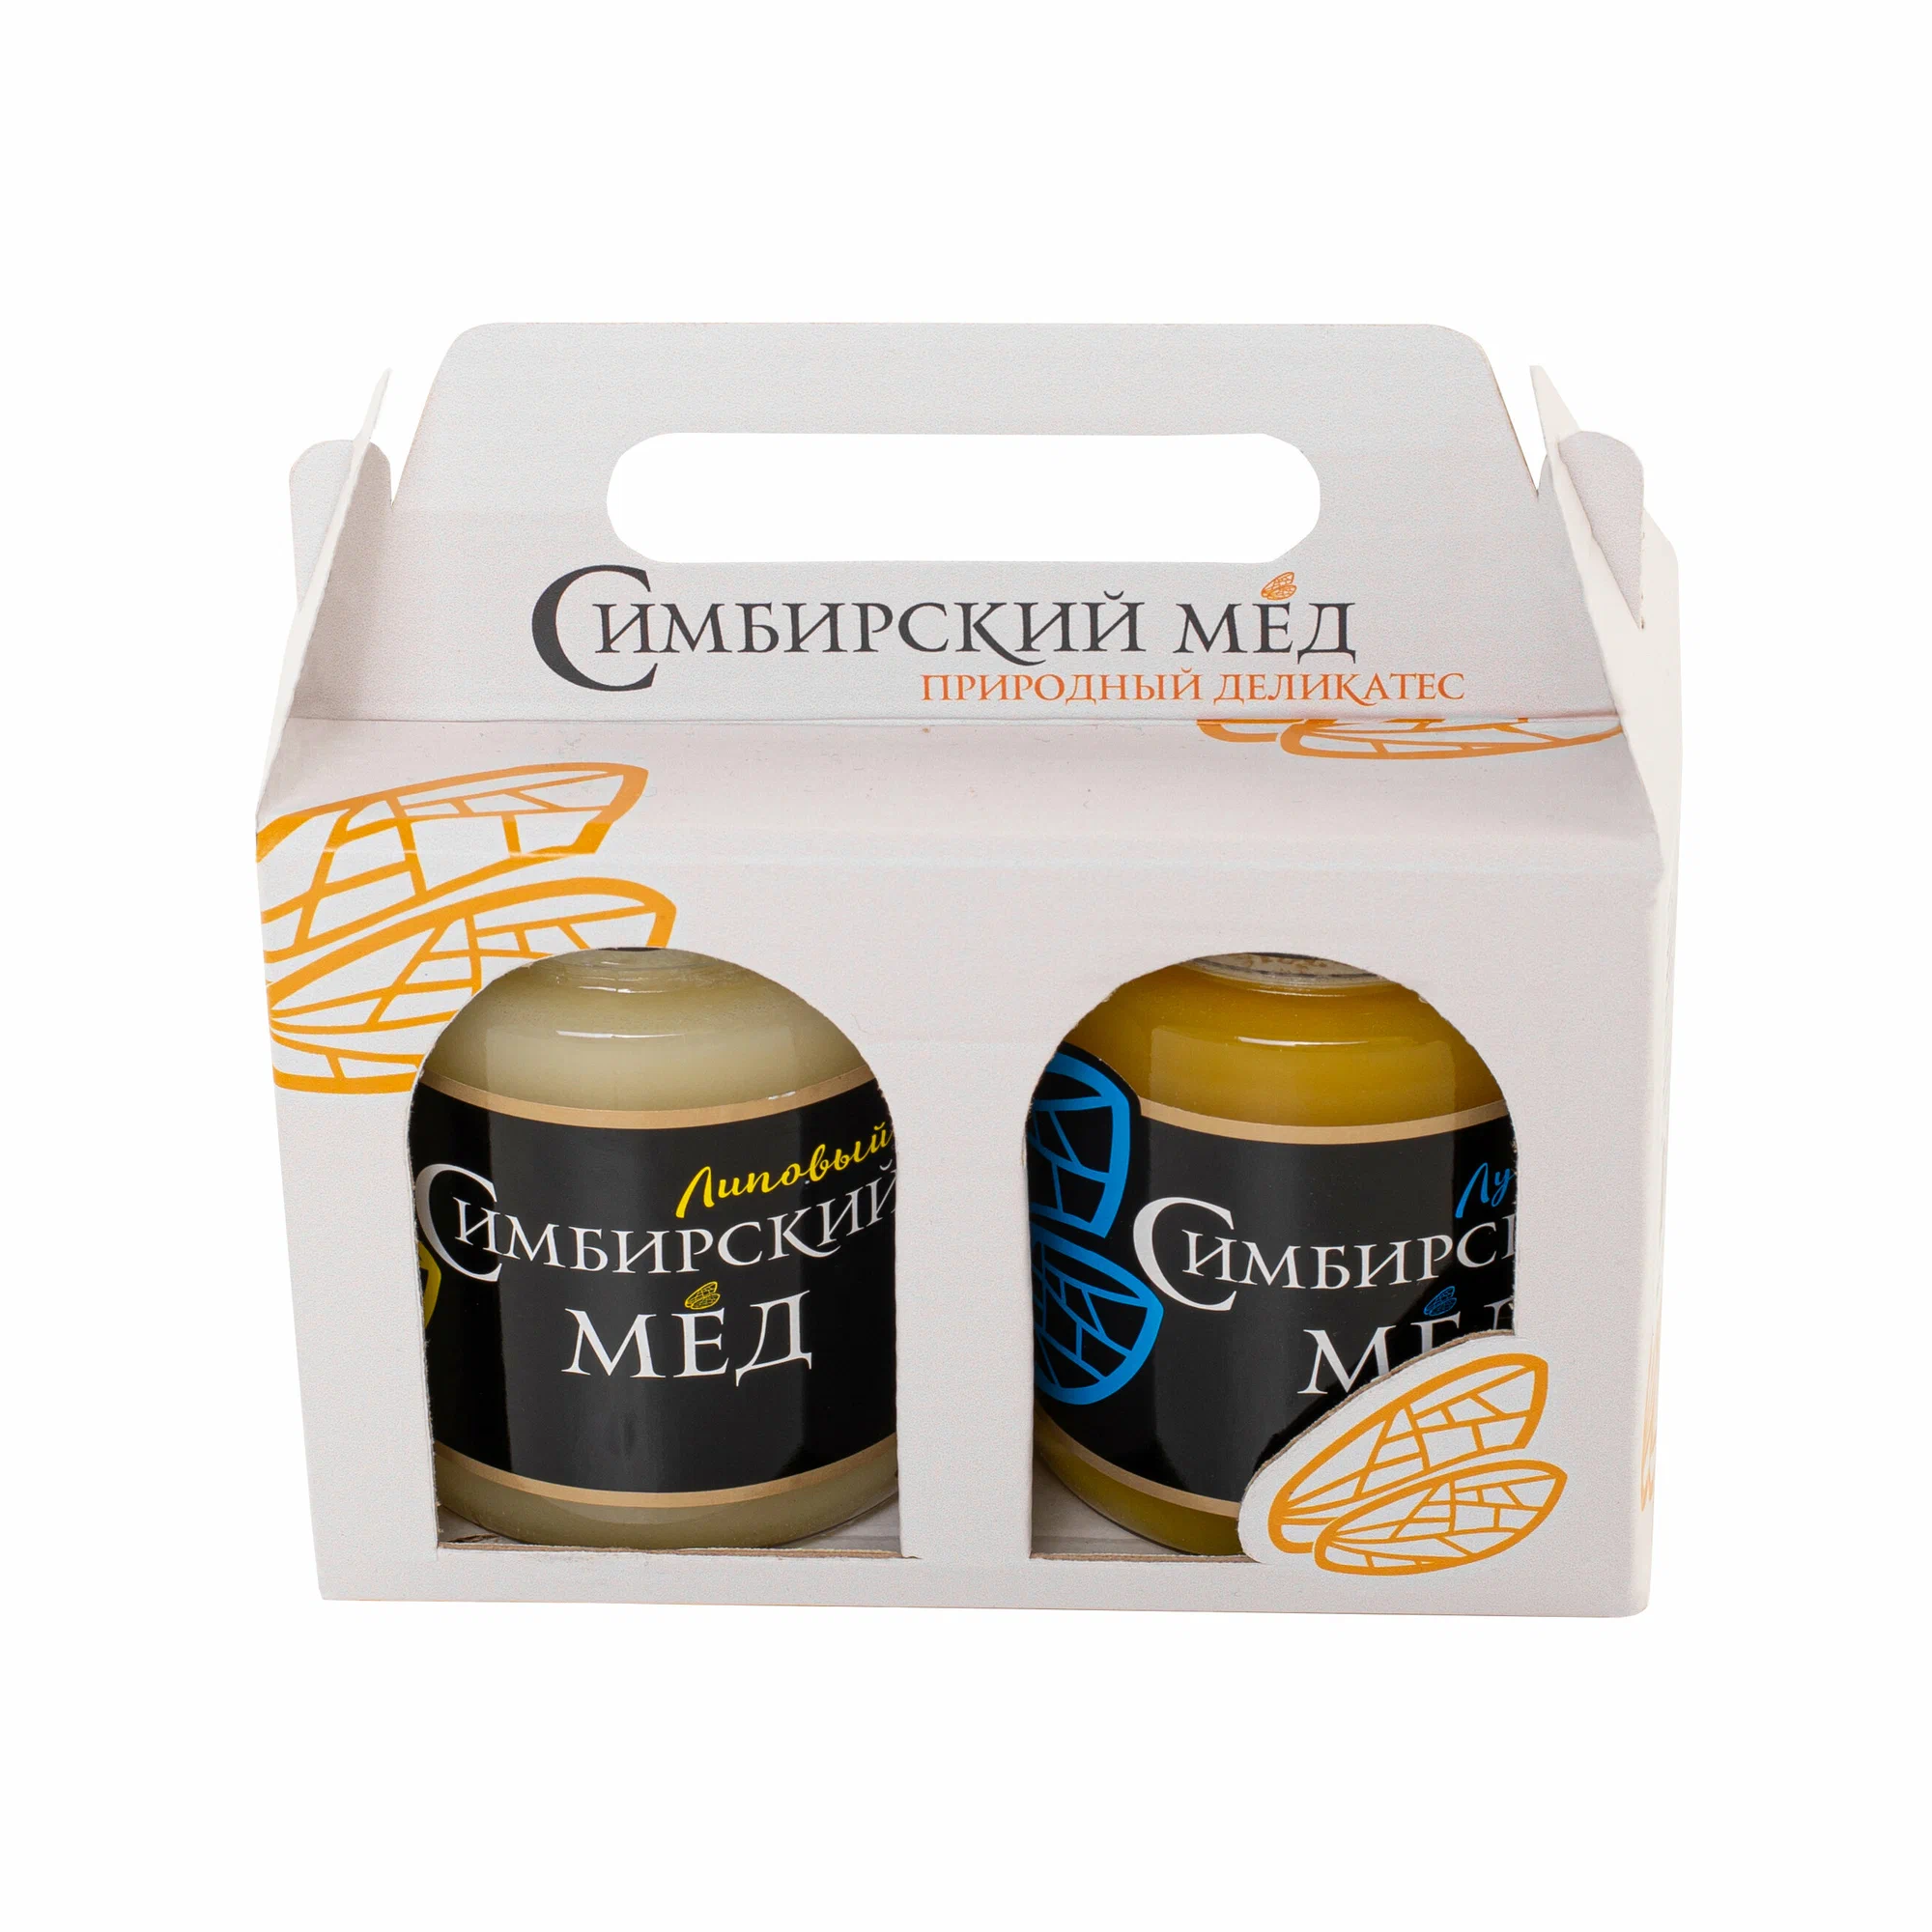 Симбирский мёд. Подарочный набор "Два вкуса меда", натуральный липовый и луговой, с час...